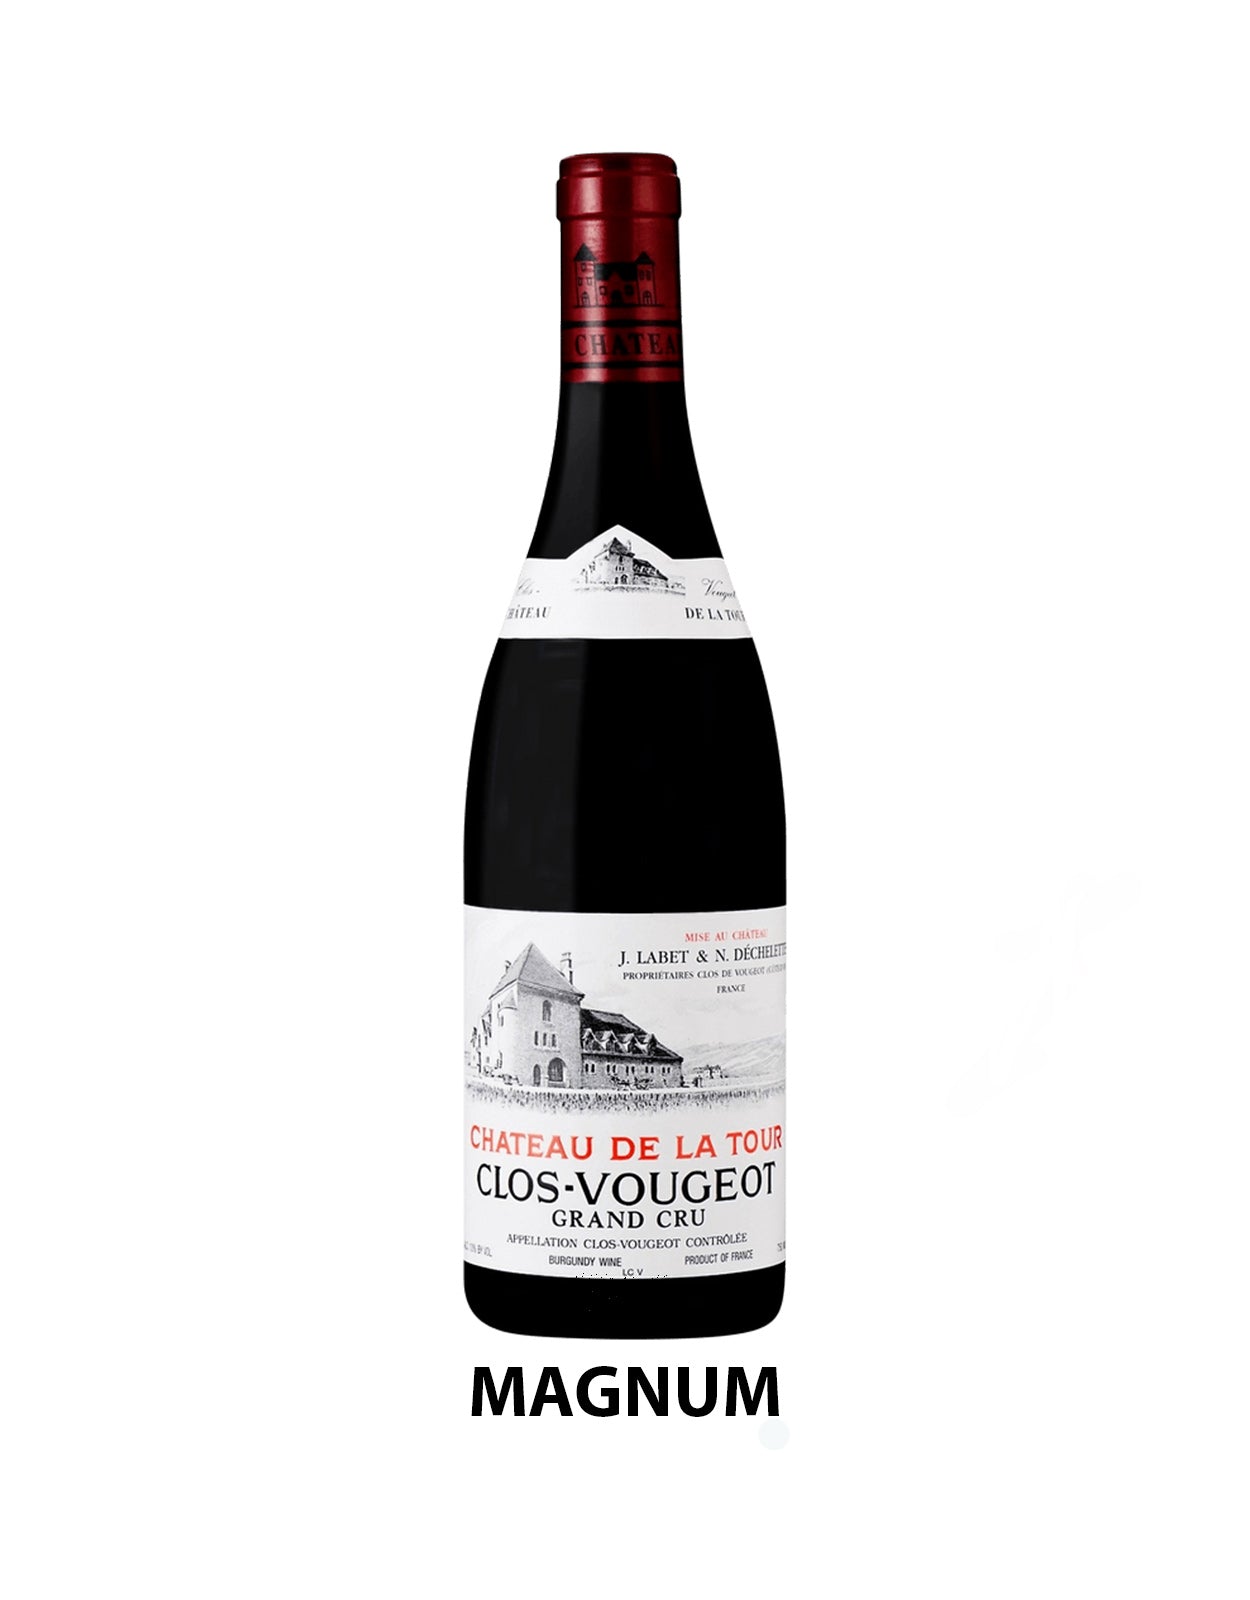 Chateau de la Tour Clos Vougeot Grand Cru "Vieilles Vignes" 2019 - 1.5 Litre Bottle